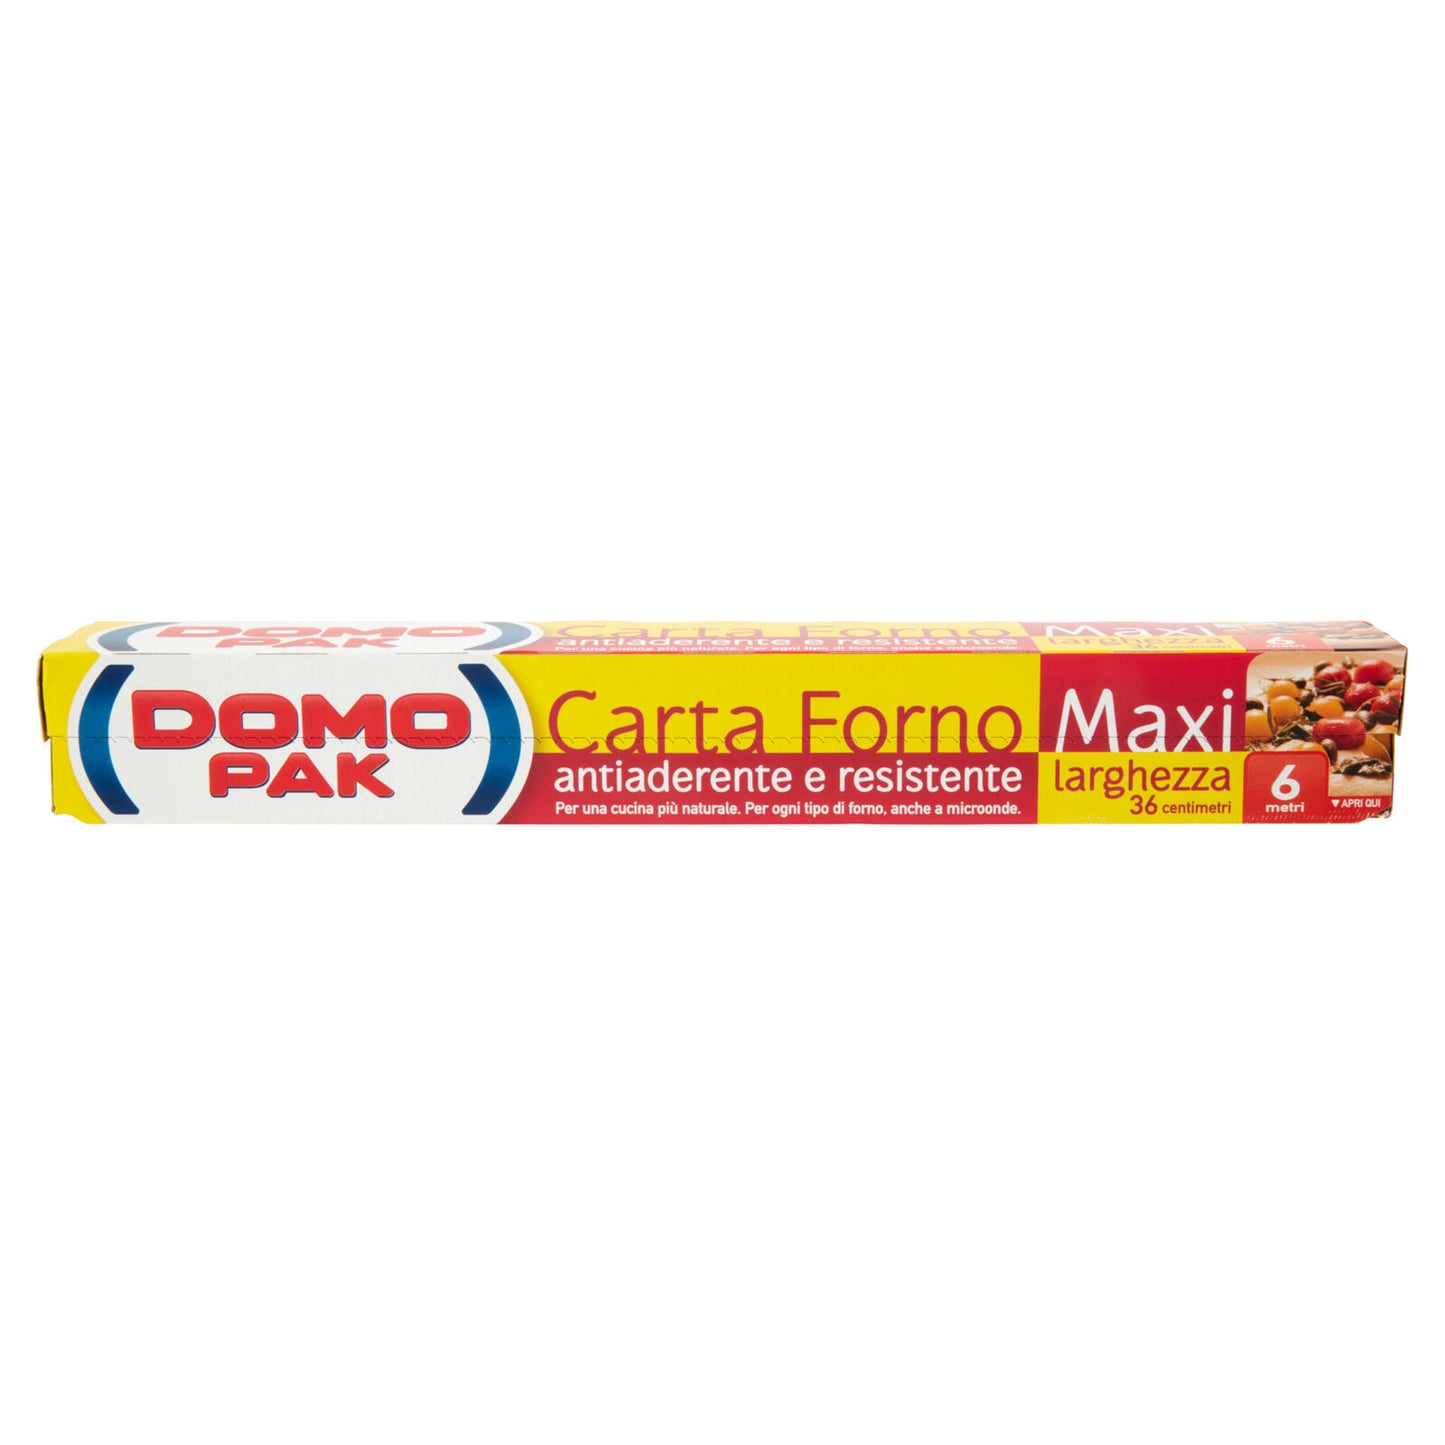 Domopak Carta Forno Maxi larghezza 36 centimetri 6 metri ->